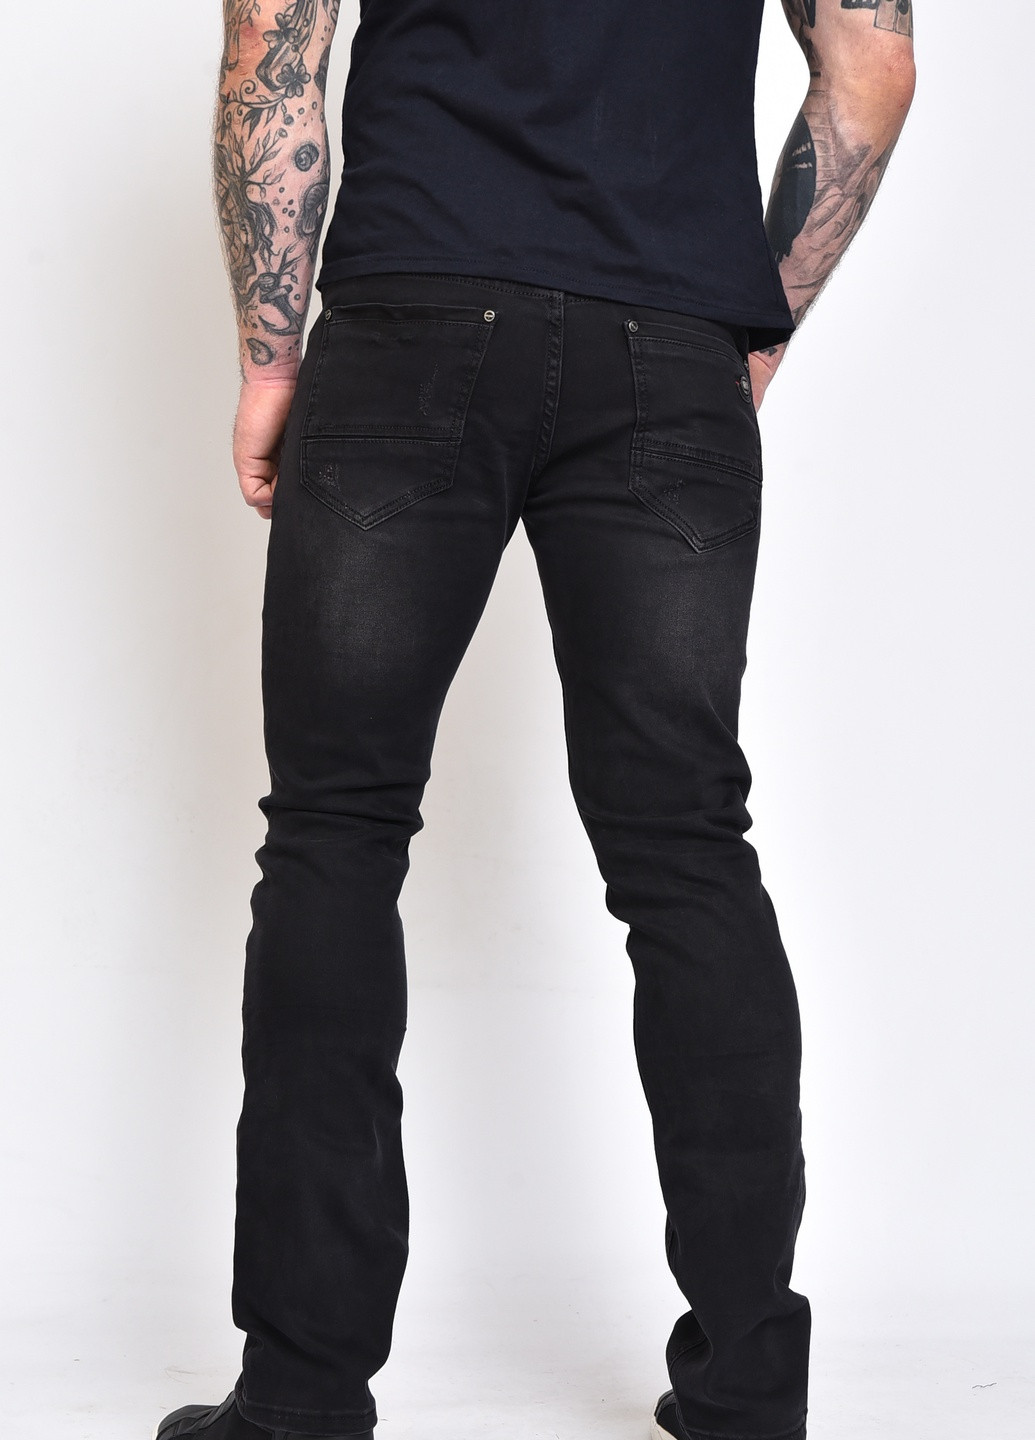 Черные джинсовые демисезонные брюки Let's Shop